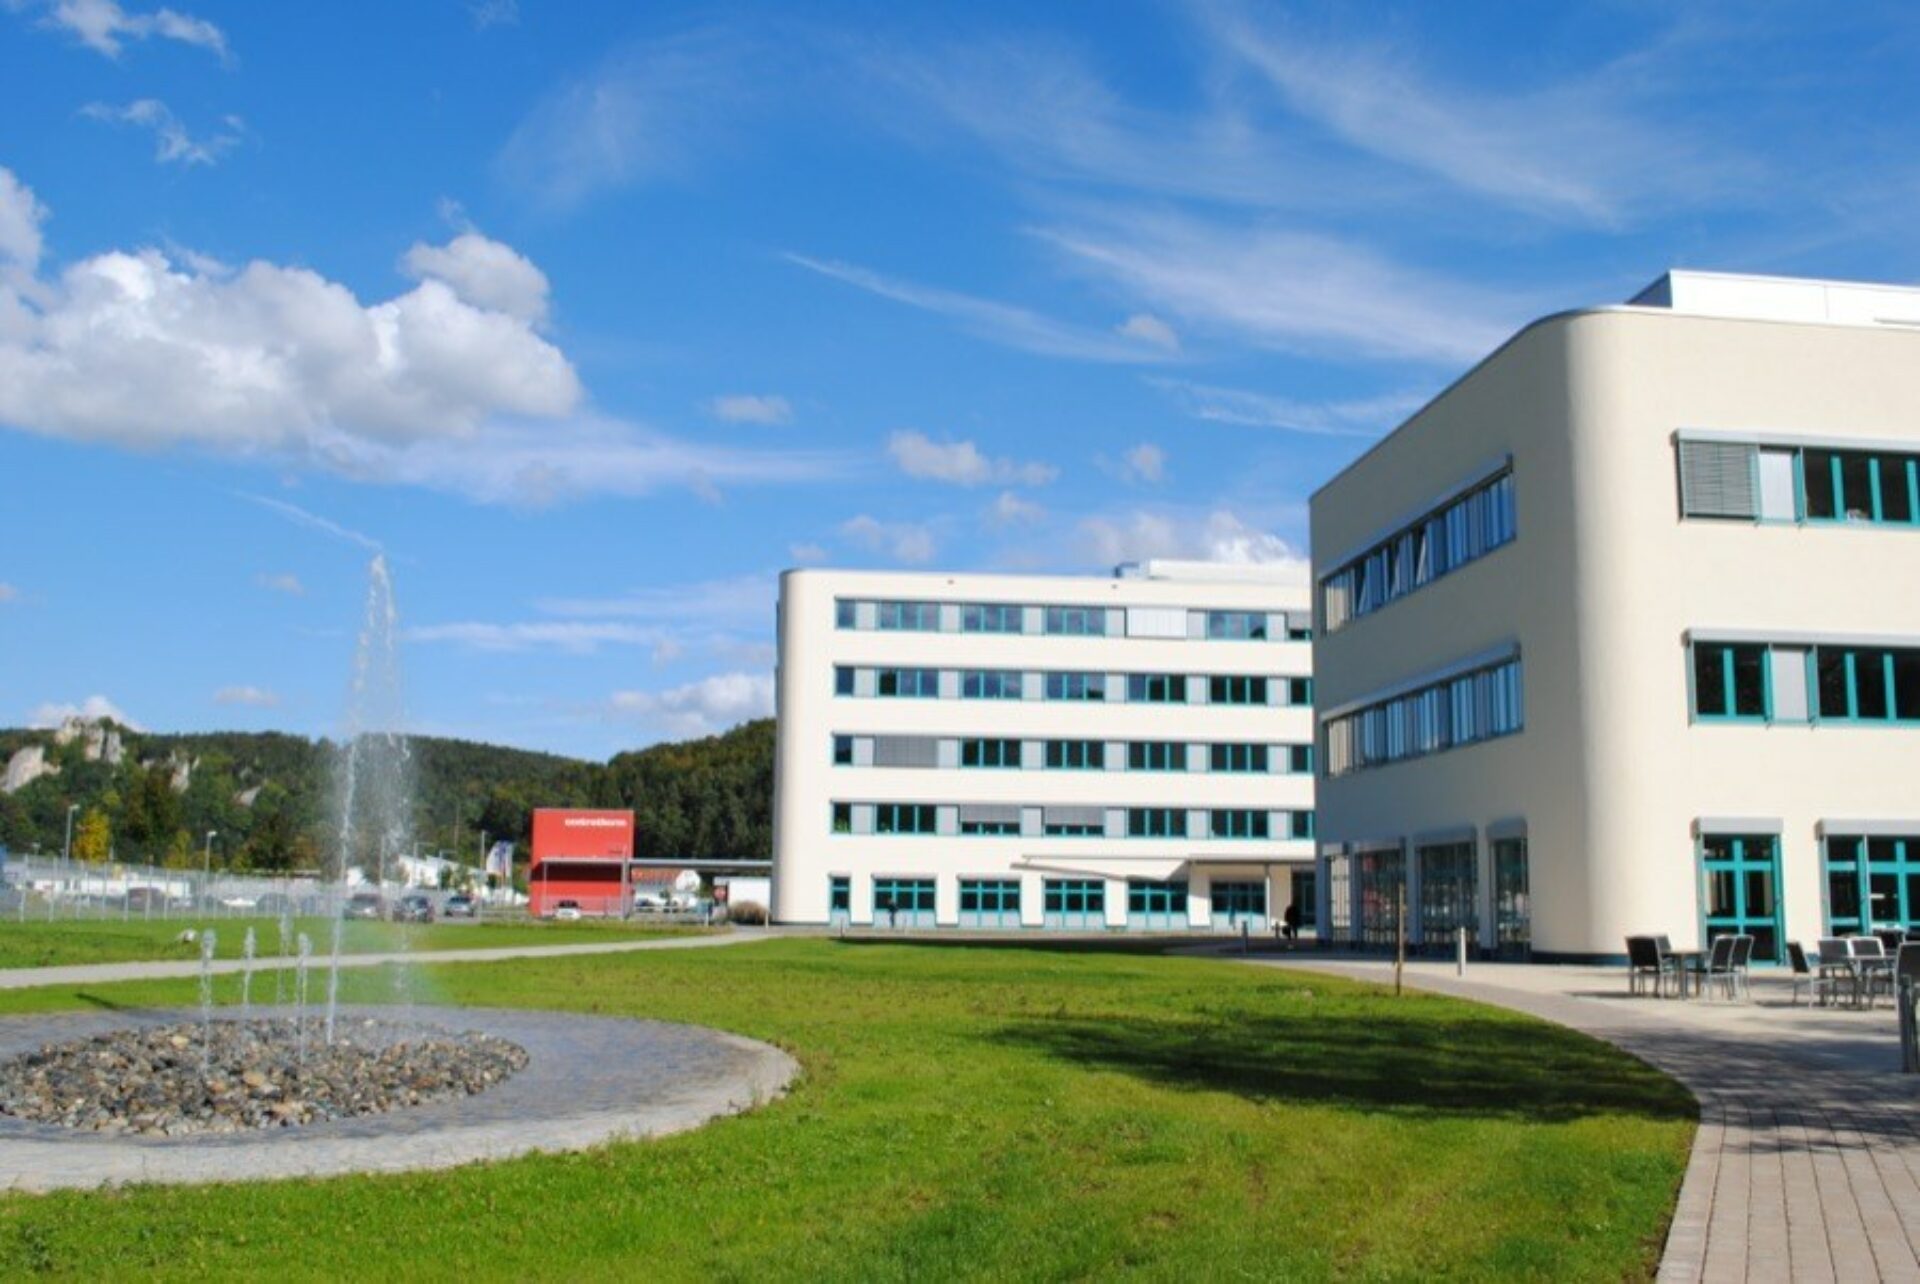 Centrotherm Fabrikerweiterung – Büro- und Produktionskomplex PV-Industrie1142